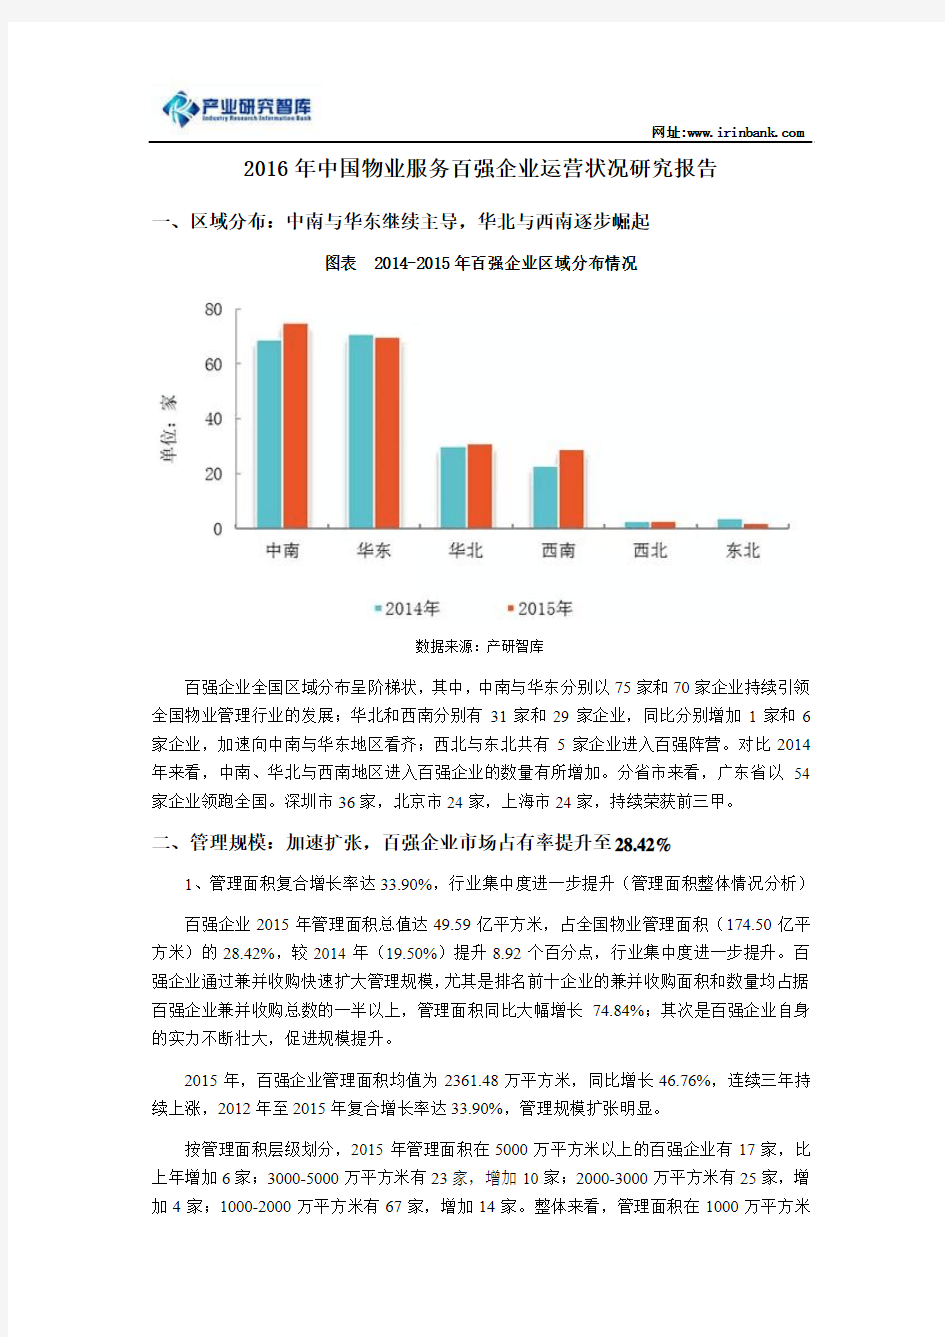 2016年中国物业服务百强企业运营状况研究报告解析